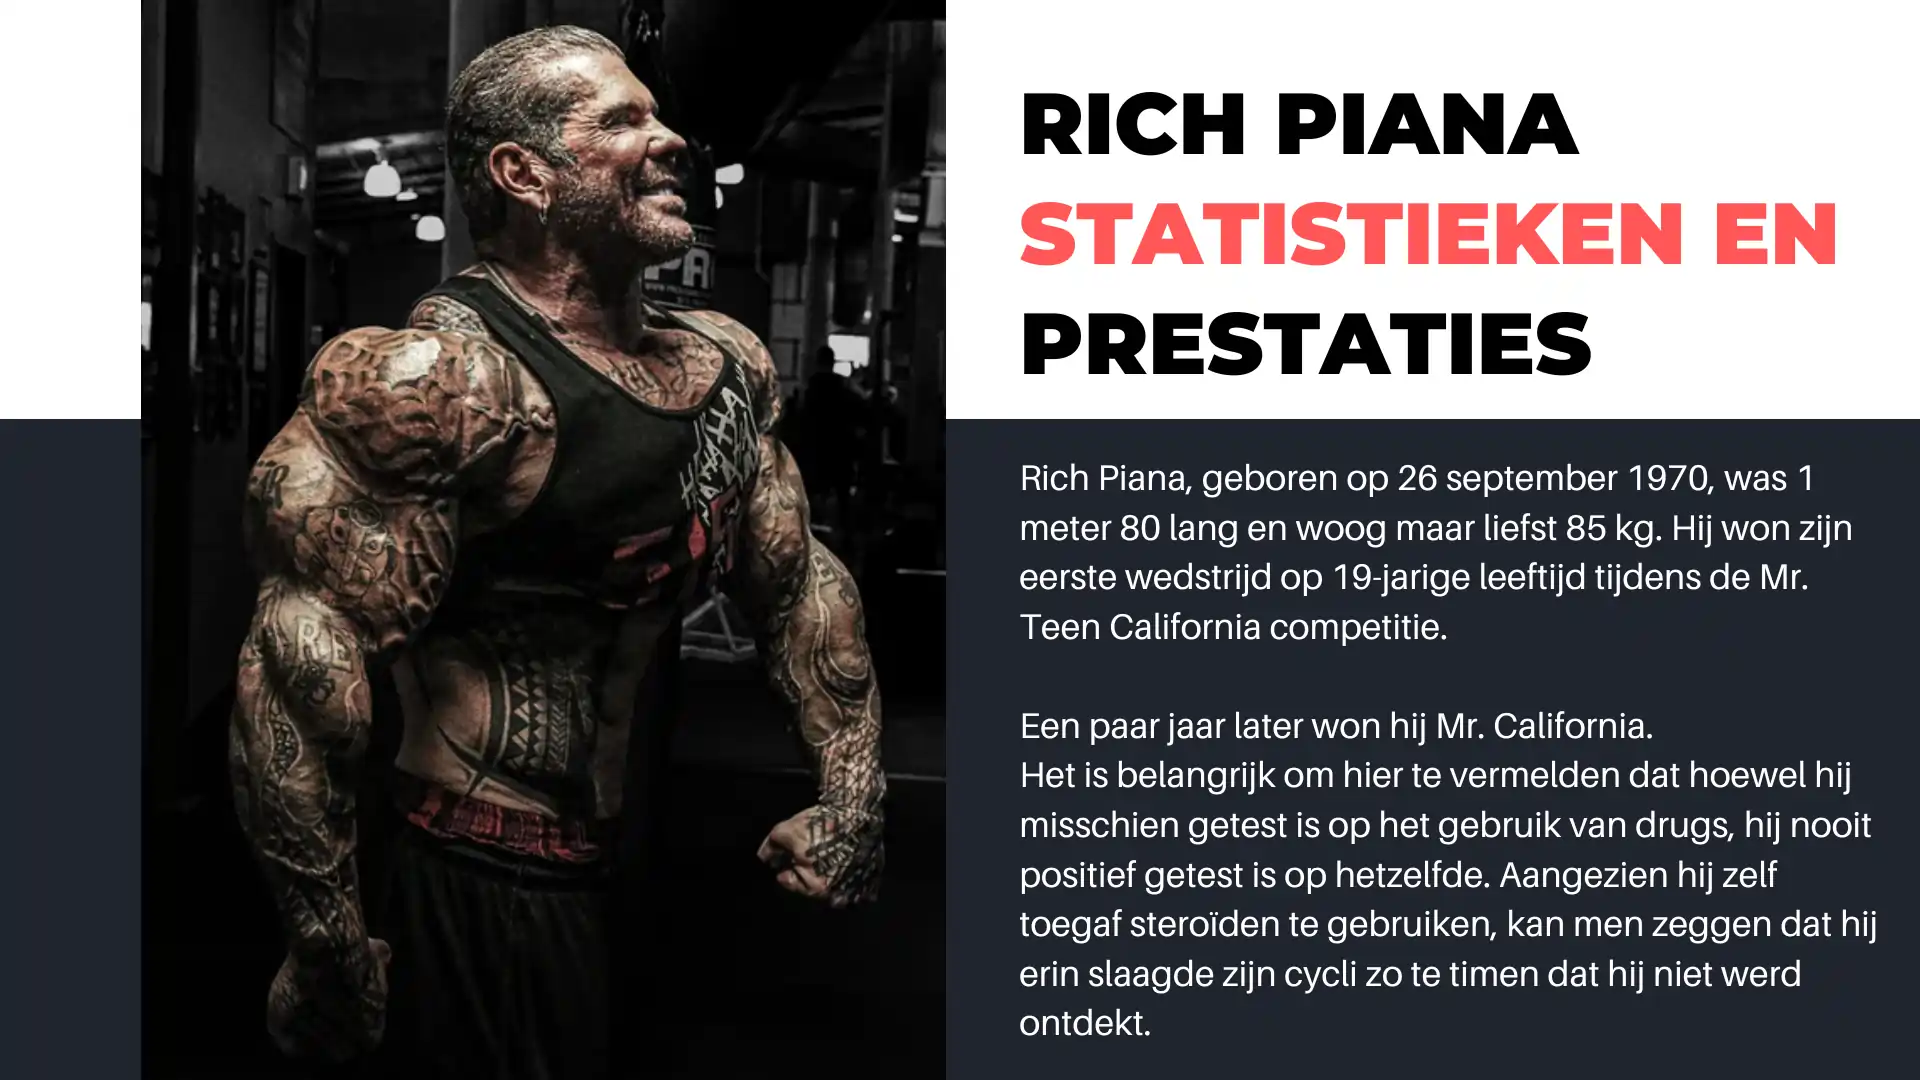 Rich Piana statistieken en prestaties